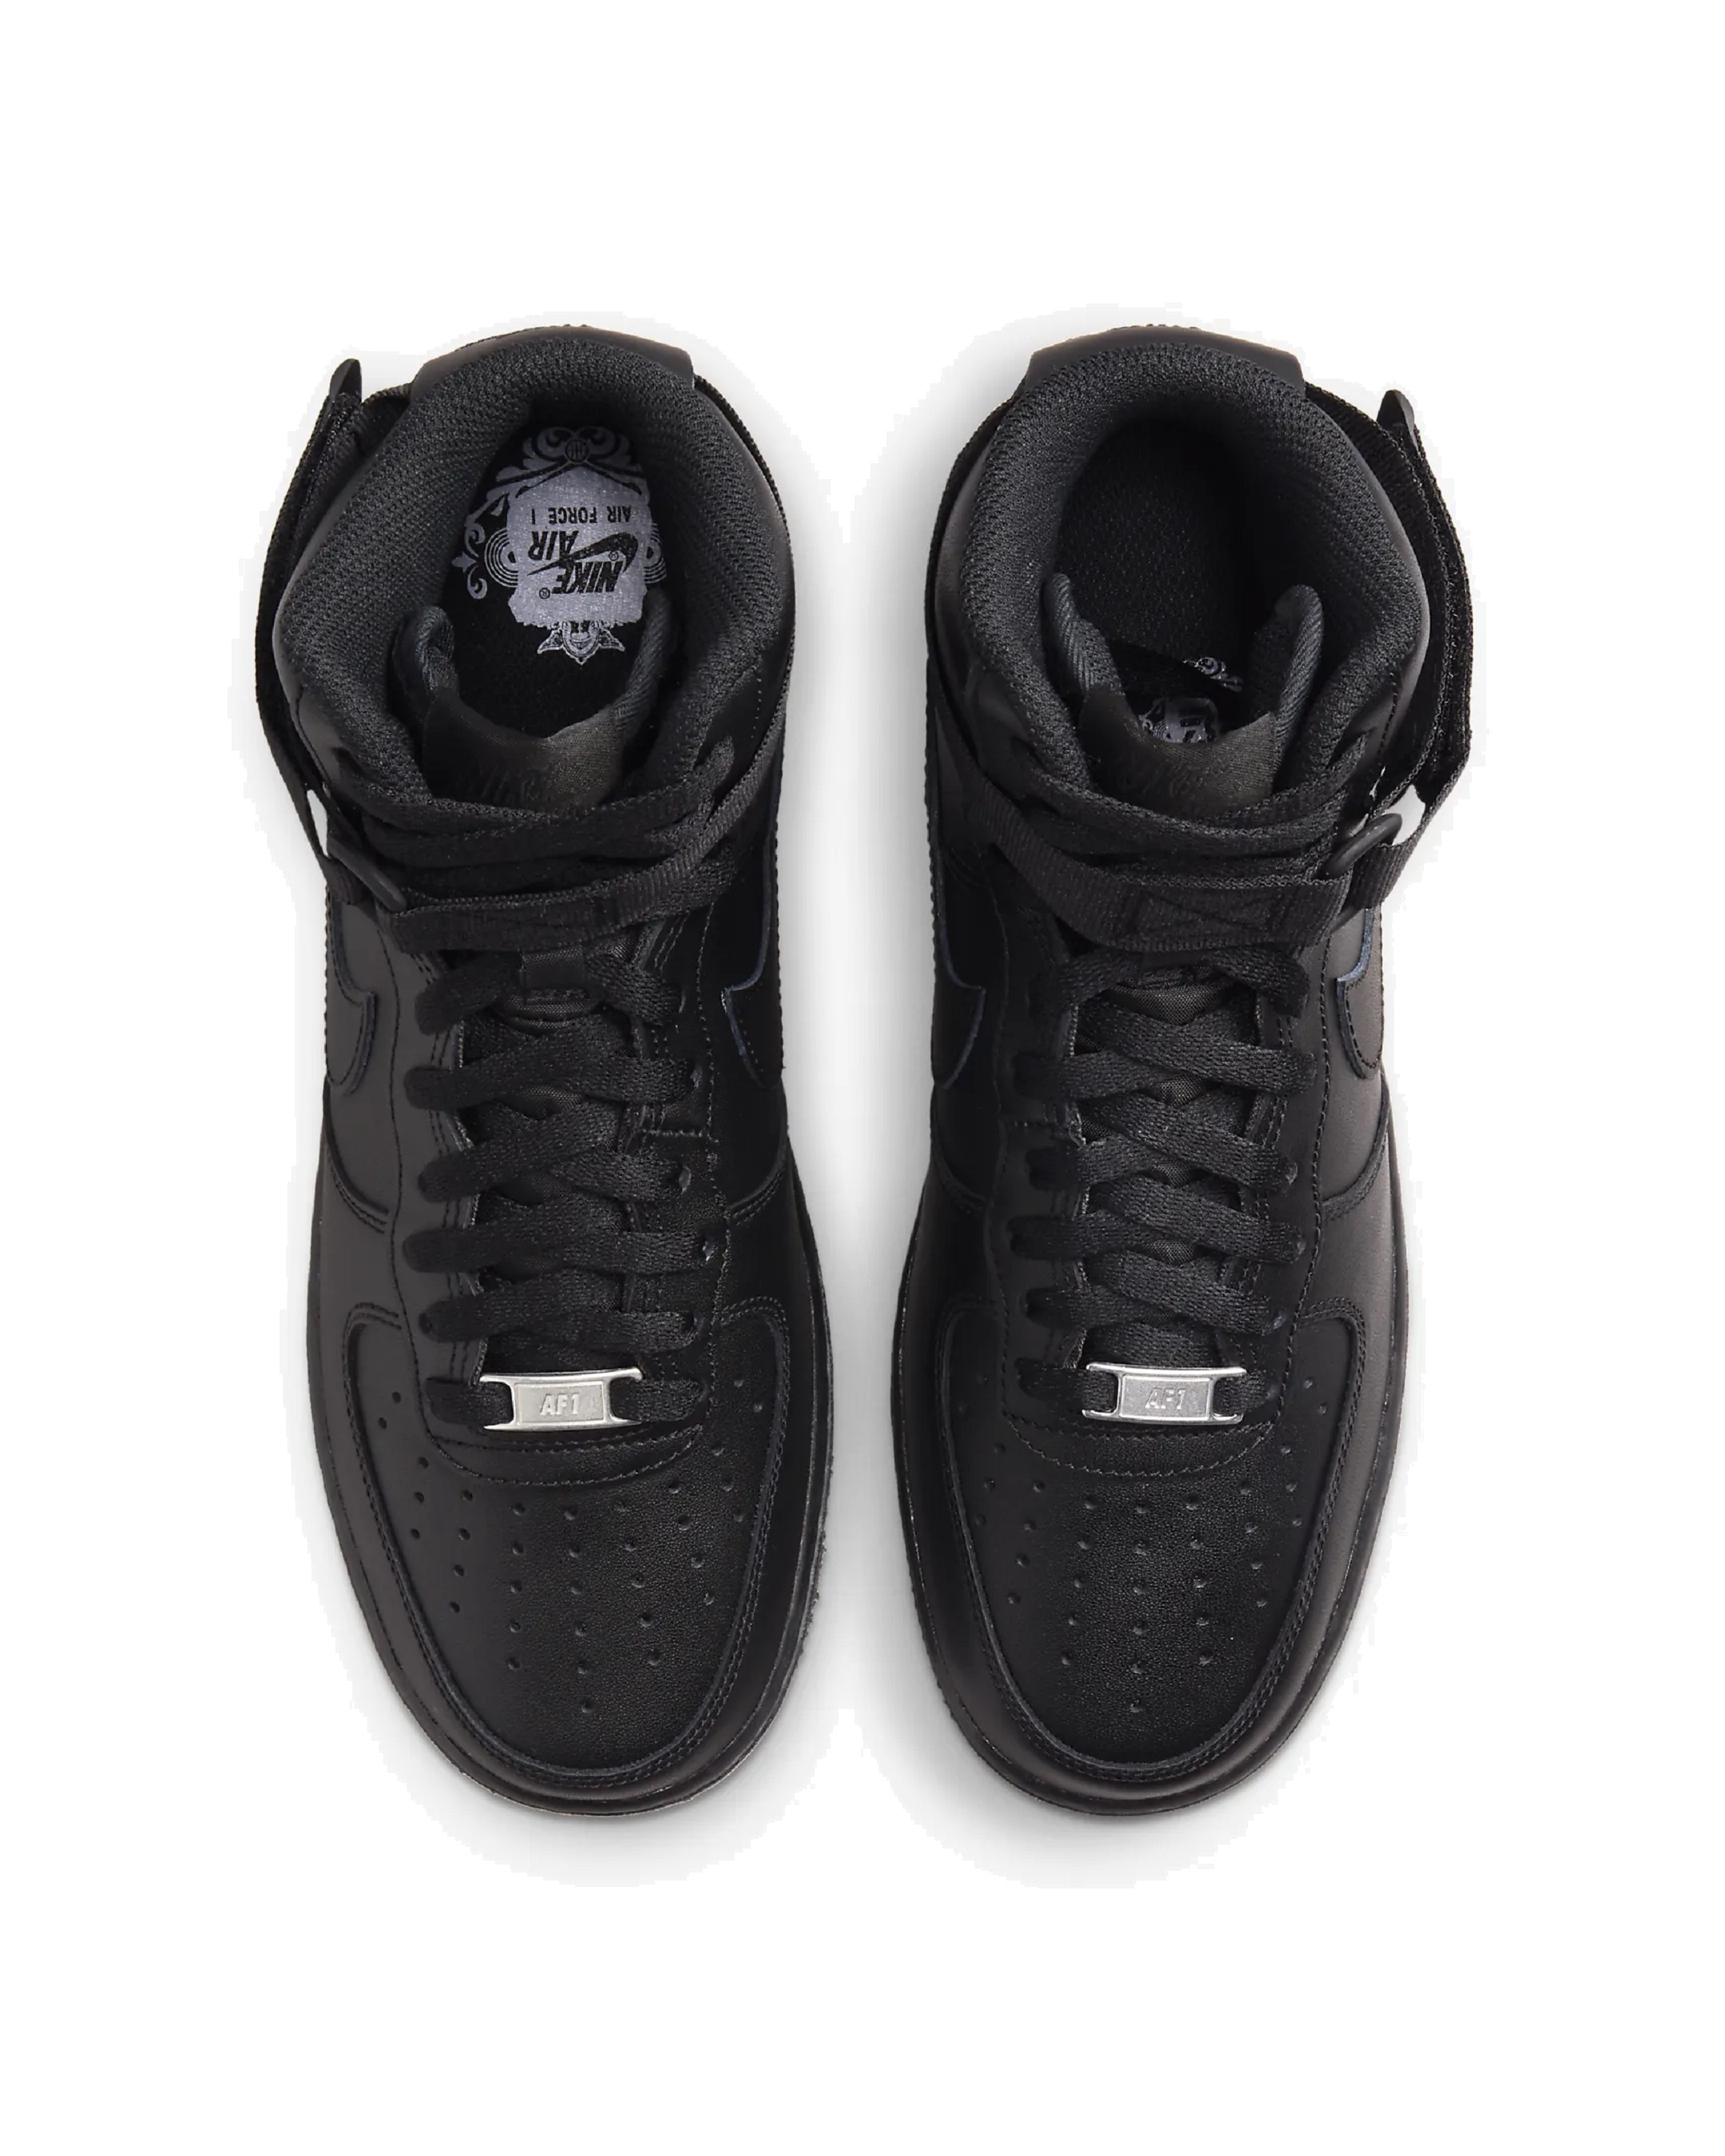 Nike Men’s Air Force 1 High ‘07 Premium Casual Shoe